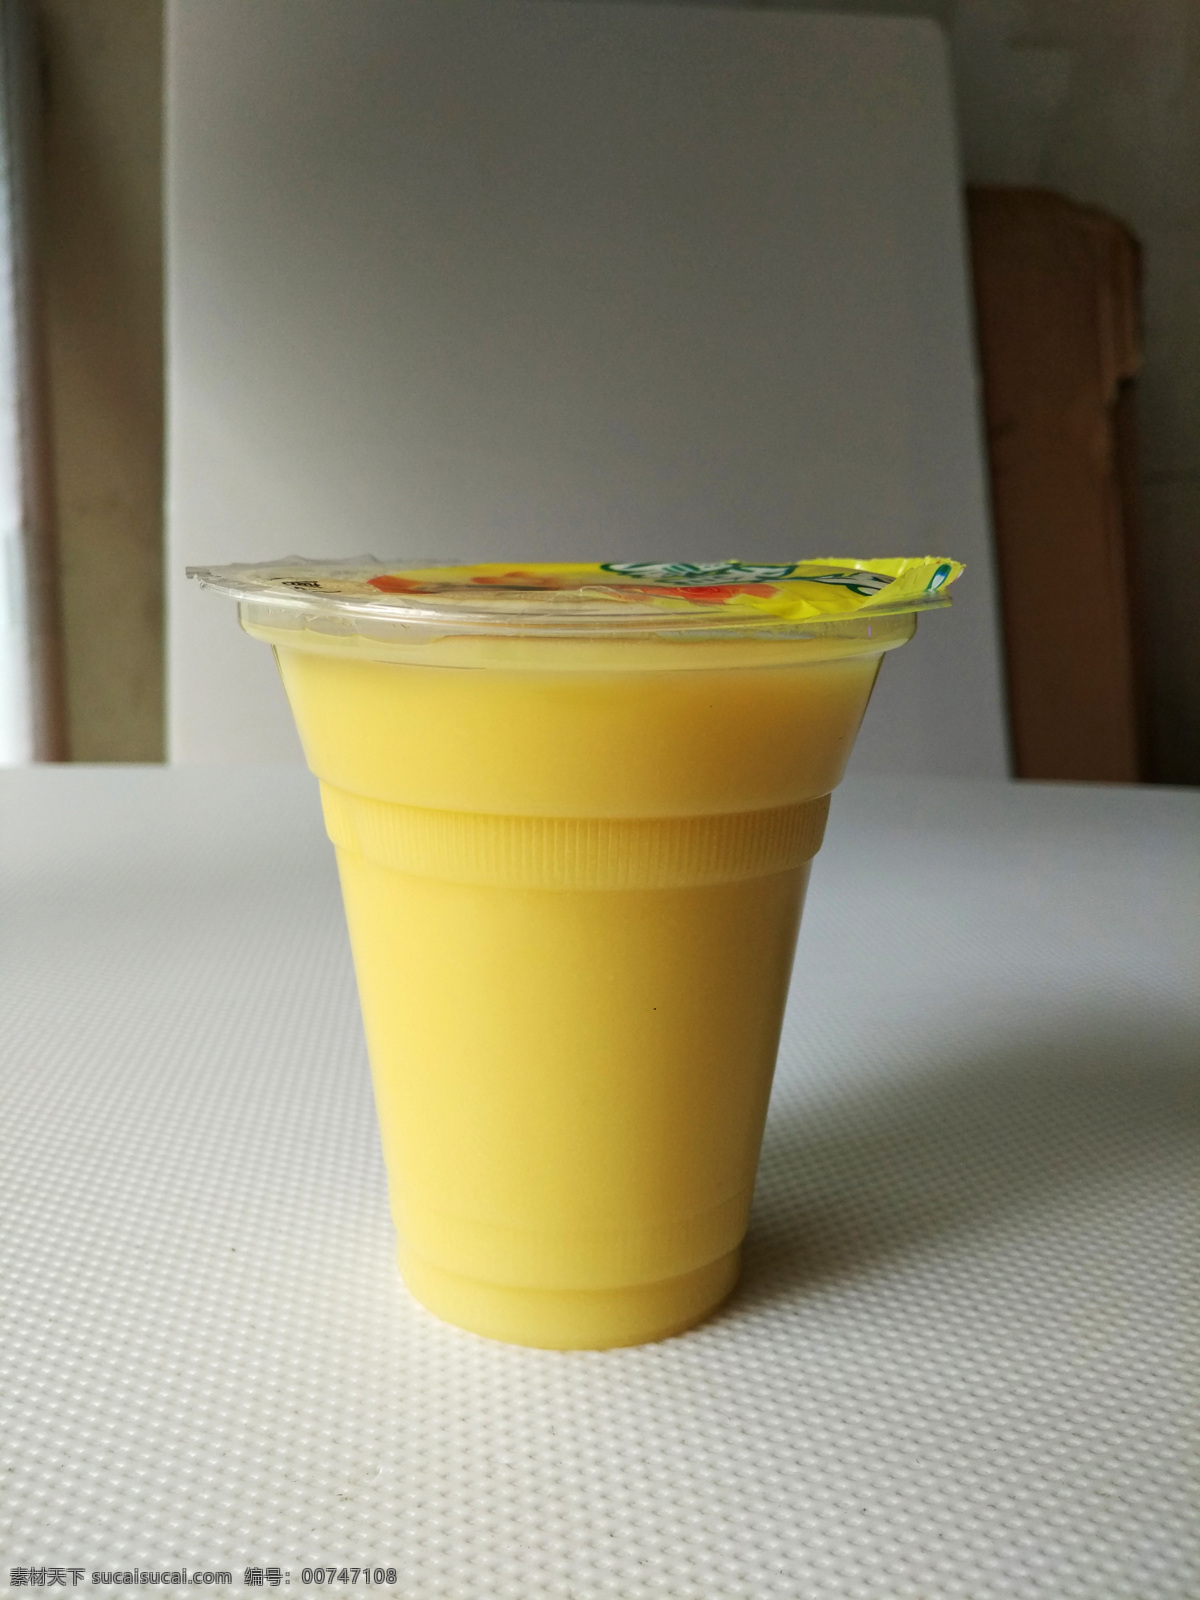 玉米汁 鲜榨玉米汁 夏季饮品 饮料 玉米 香甜玉米汁 玉米果汁 美食饮料 餐饮美食 传统美食